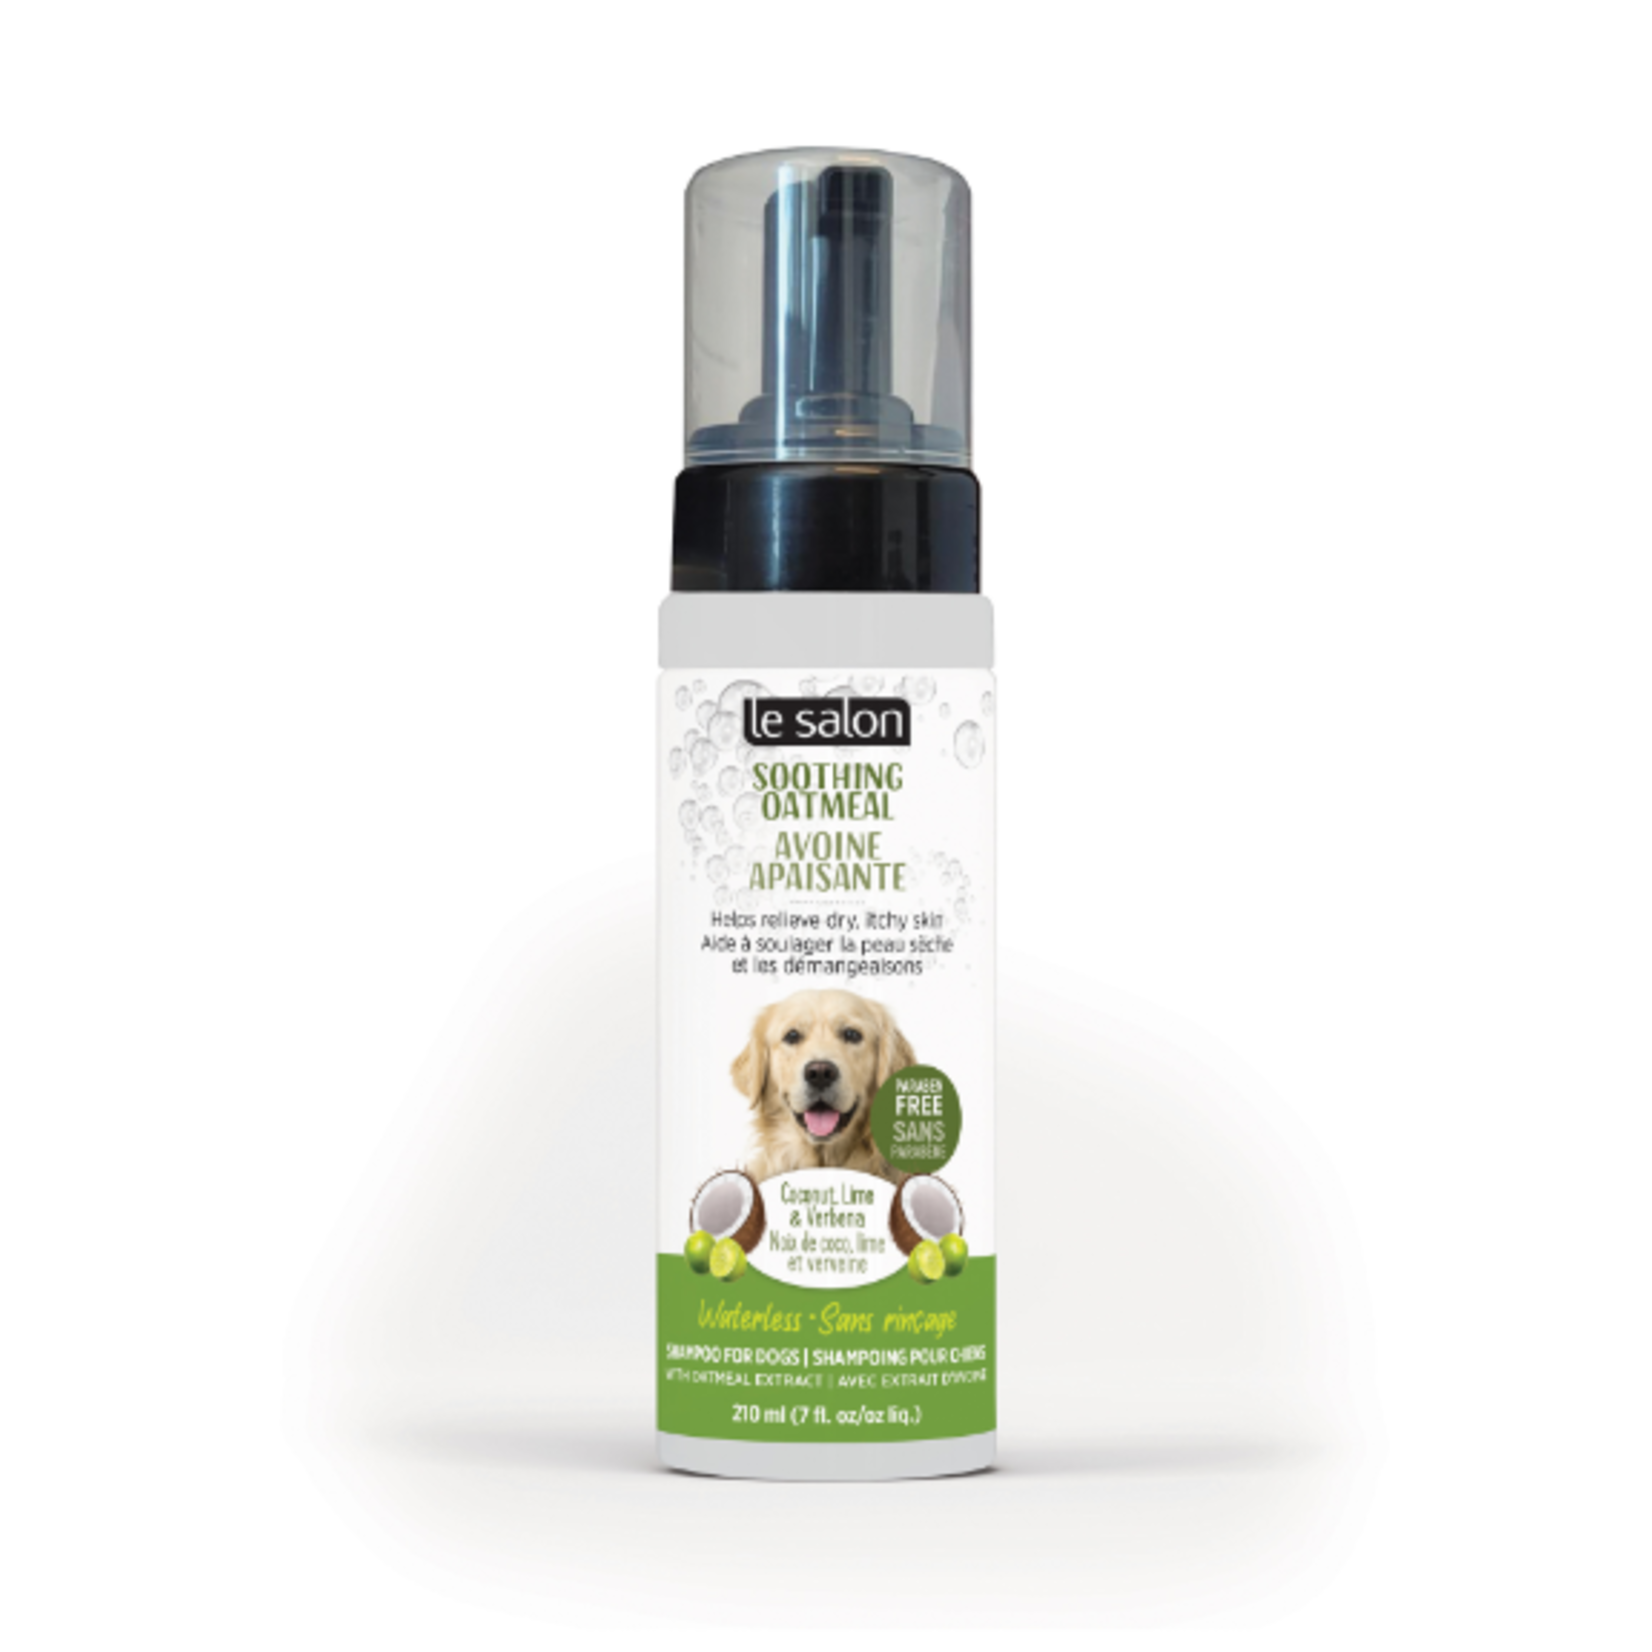 Le Salon Avoine apaisante - Shampoing sans rinçage pour chiens - 210 ml